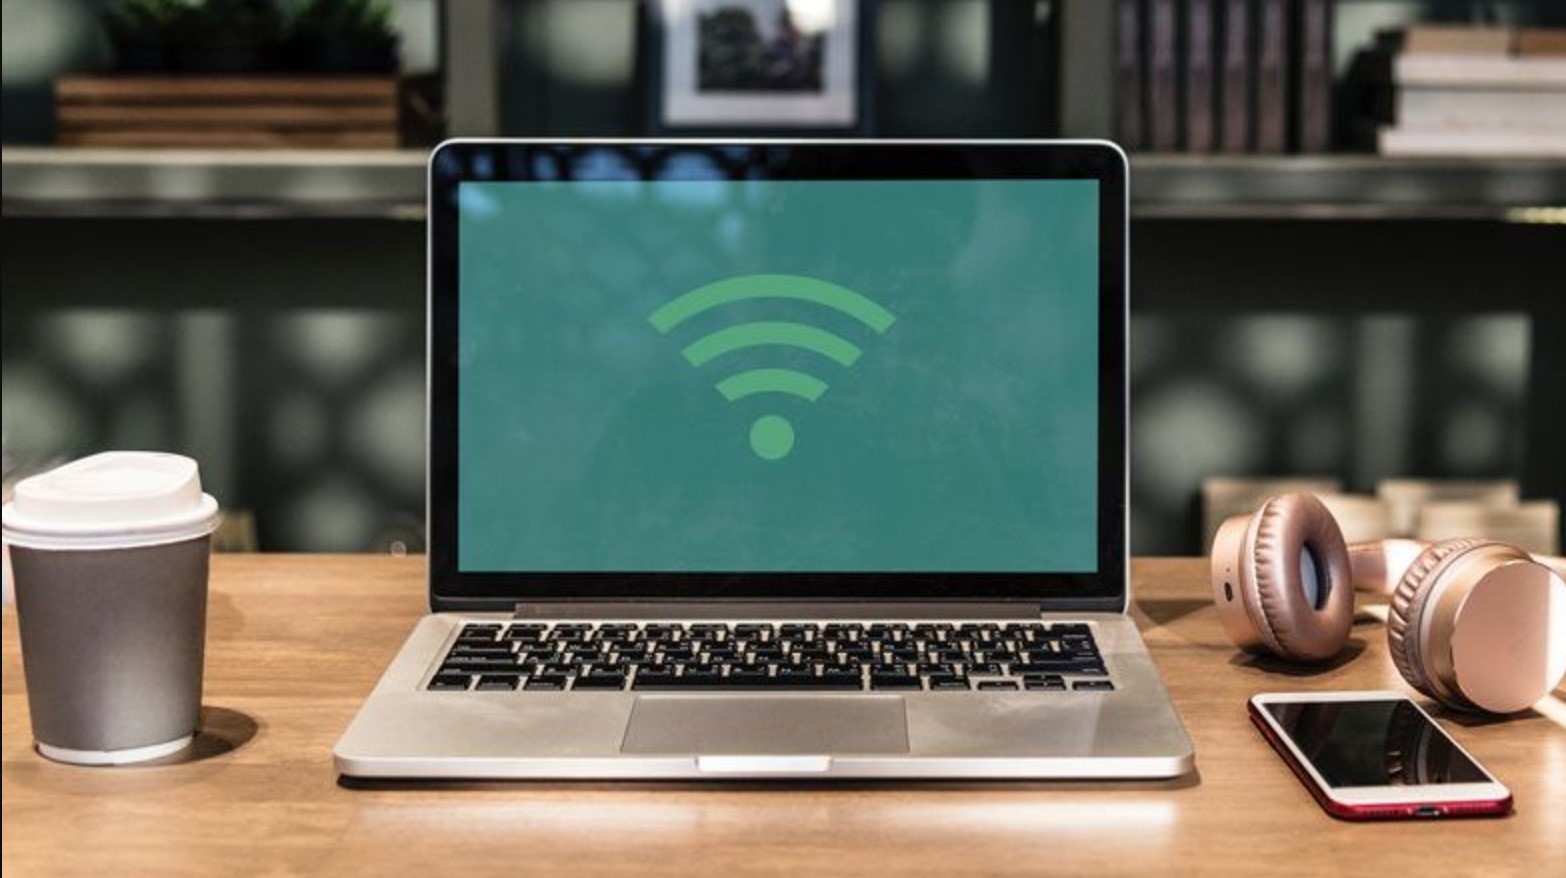 Dengan Cara ini, Wifi di Laptop Kamu Lebih Kencang, Internetan Pun Jadi Super Lancar